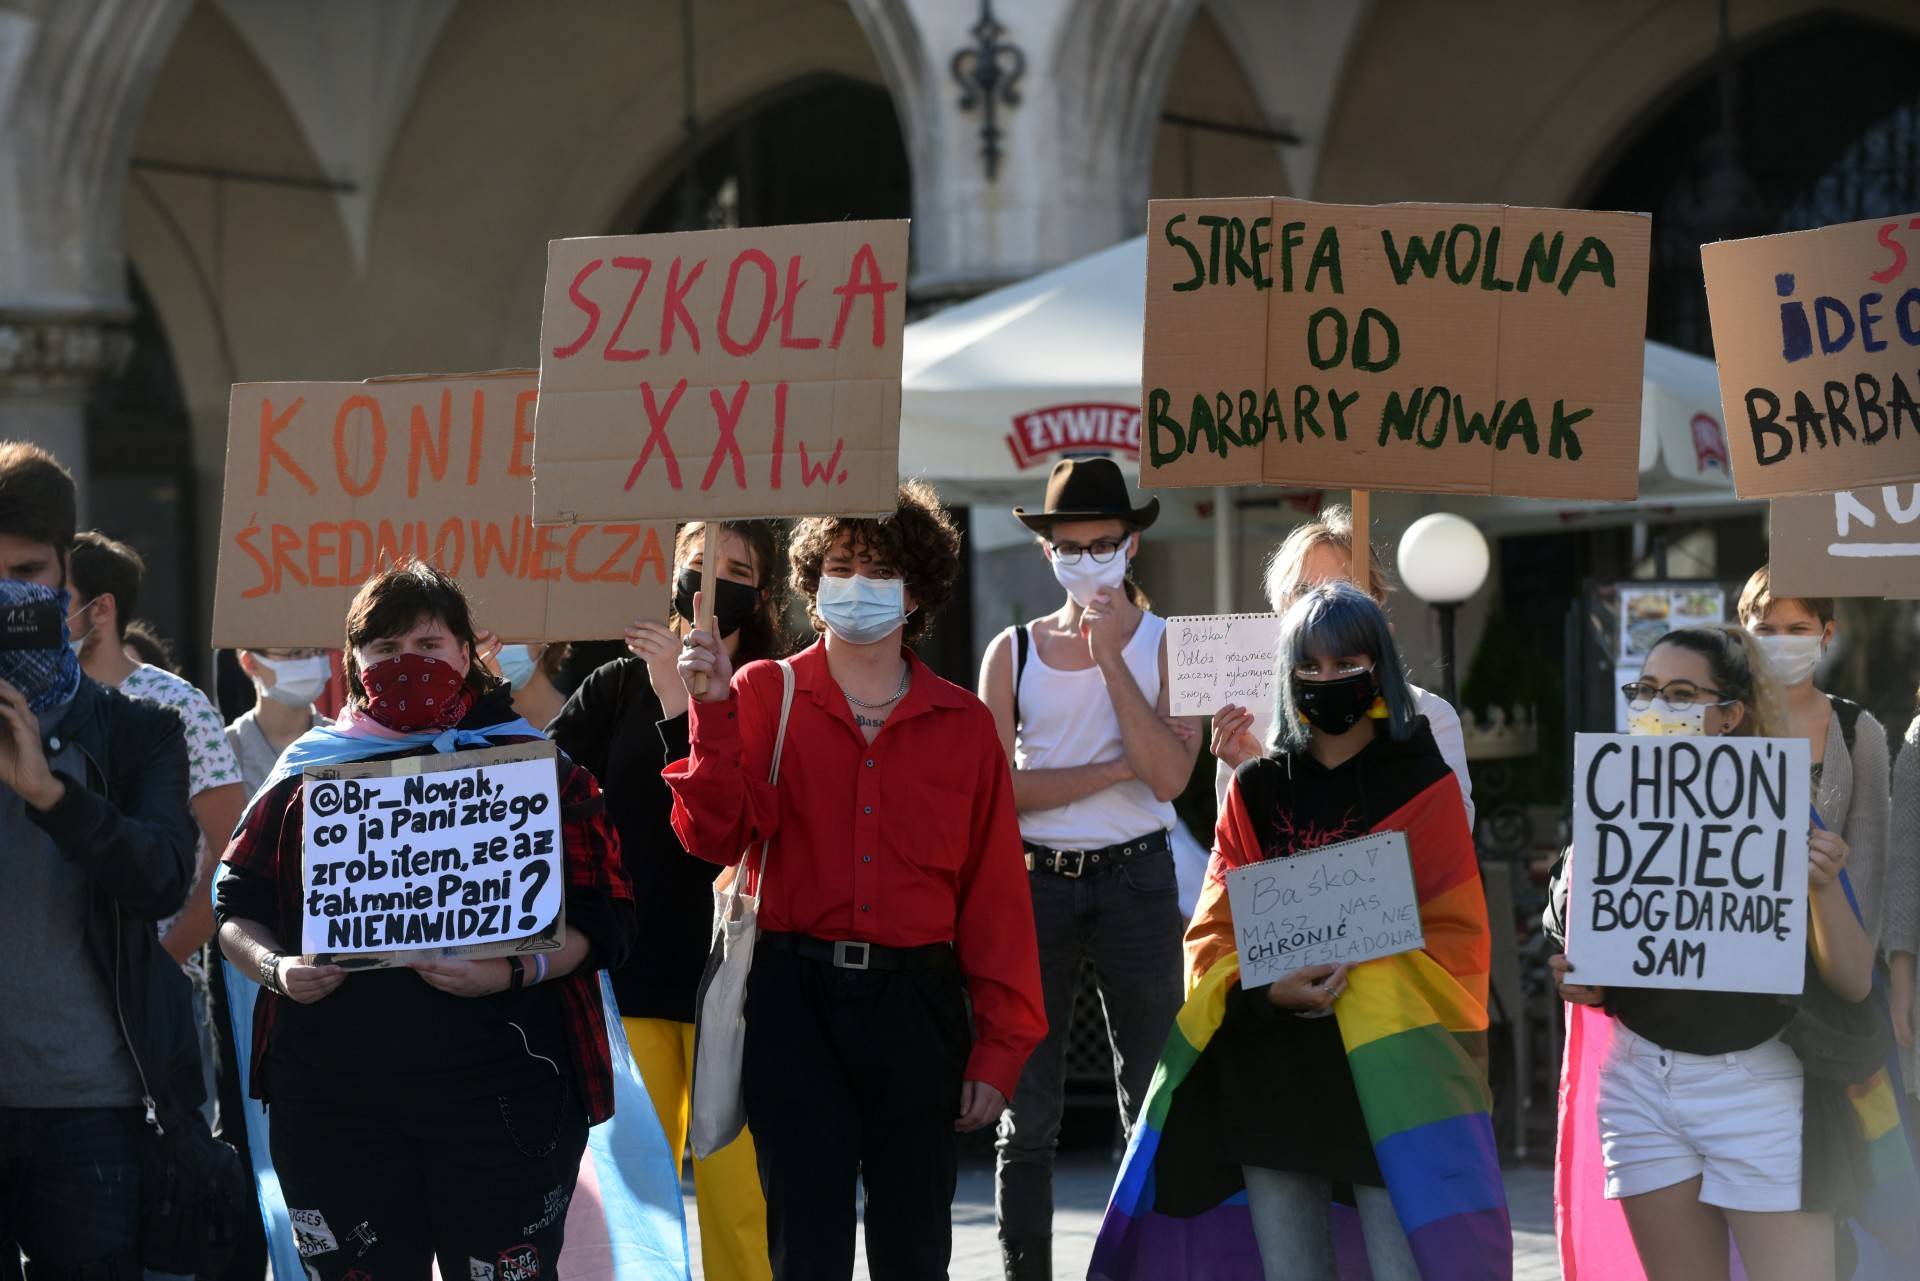 "Strefa wolna od kurator Barbary Nowak". Protest w Krakowie